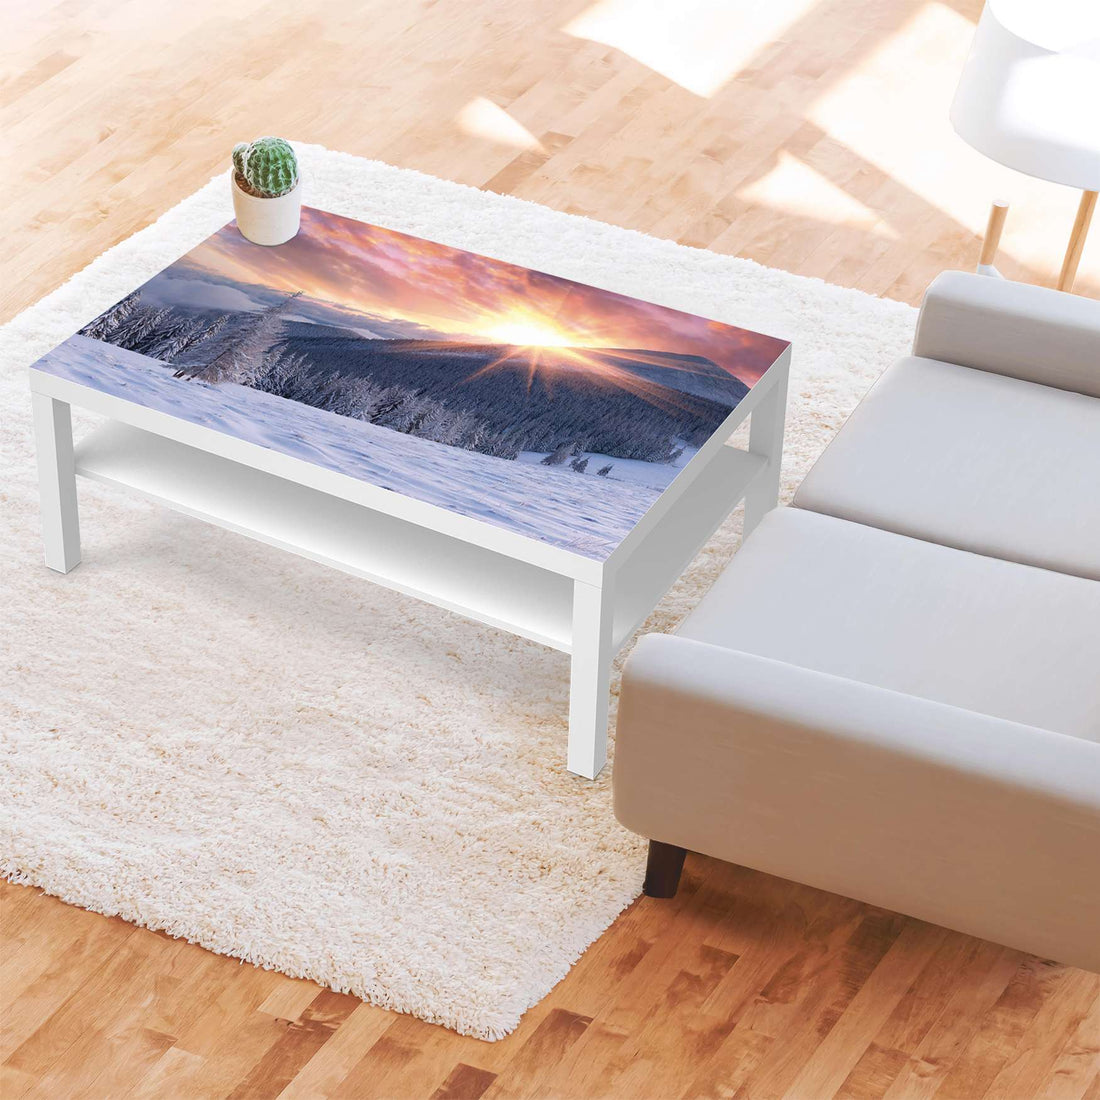 Klebefolie Zauberhafte Winterlandschaft - IKEA Lack Tisch 118x78 cm - Wohnzimmer